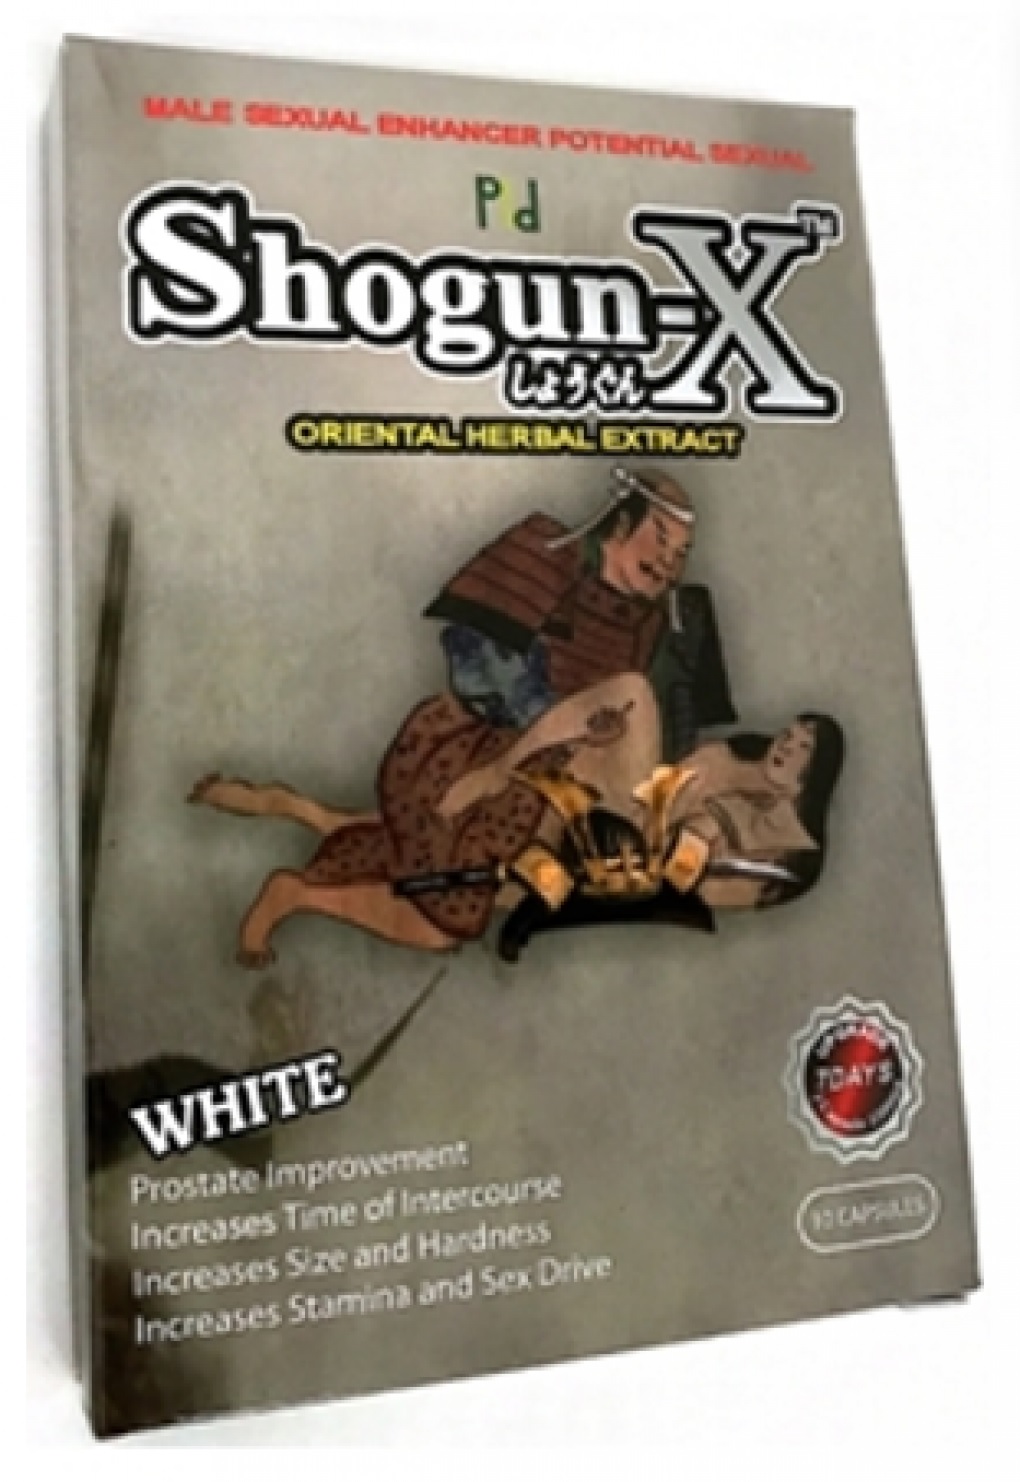 Billede af det ulovlige produkt: Shogun-X 7000